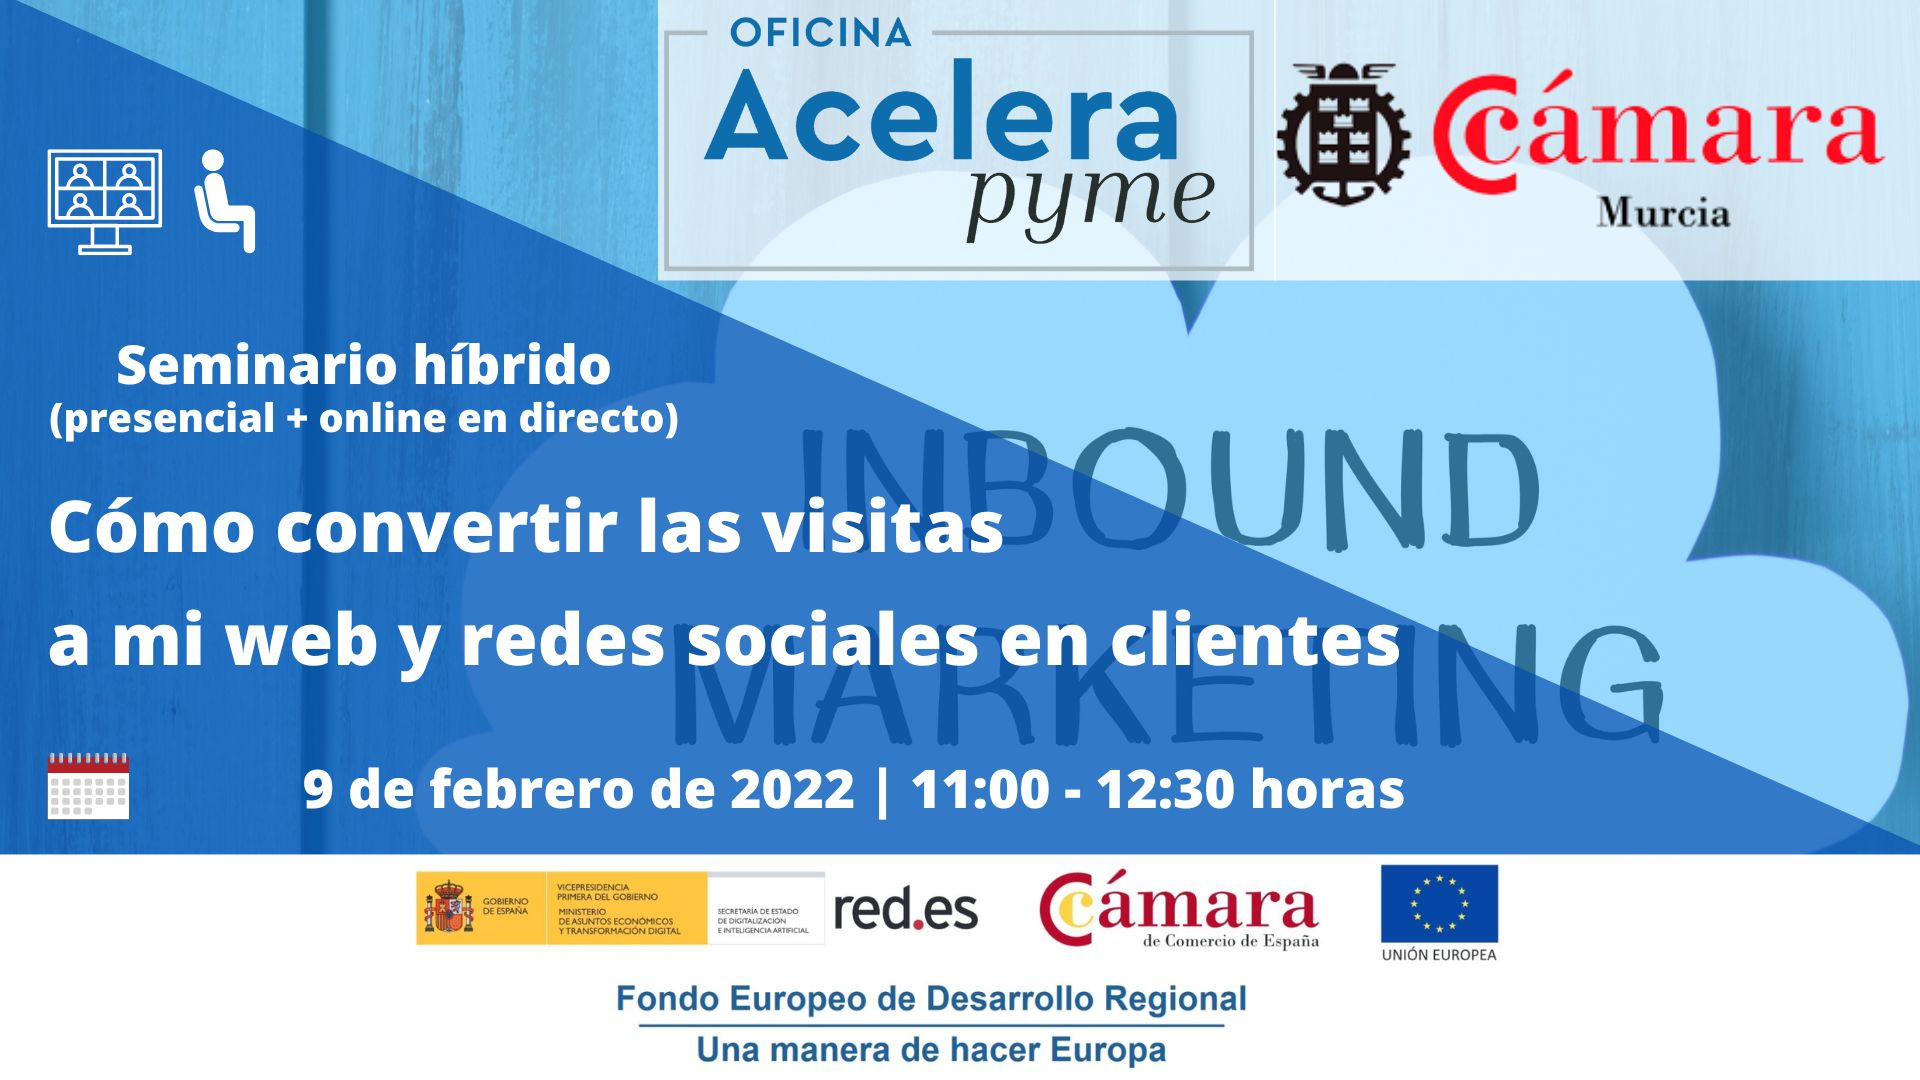 Oficina Acelera Pyme | Cómo convertir las visitas web y a redes sociales en clientes | Cámara de Comercio de Murcia